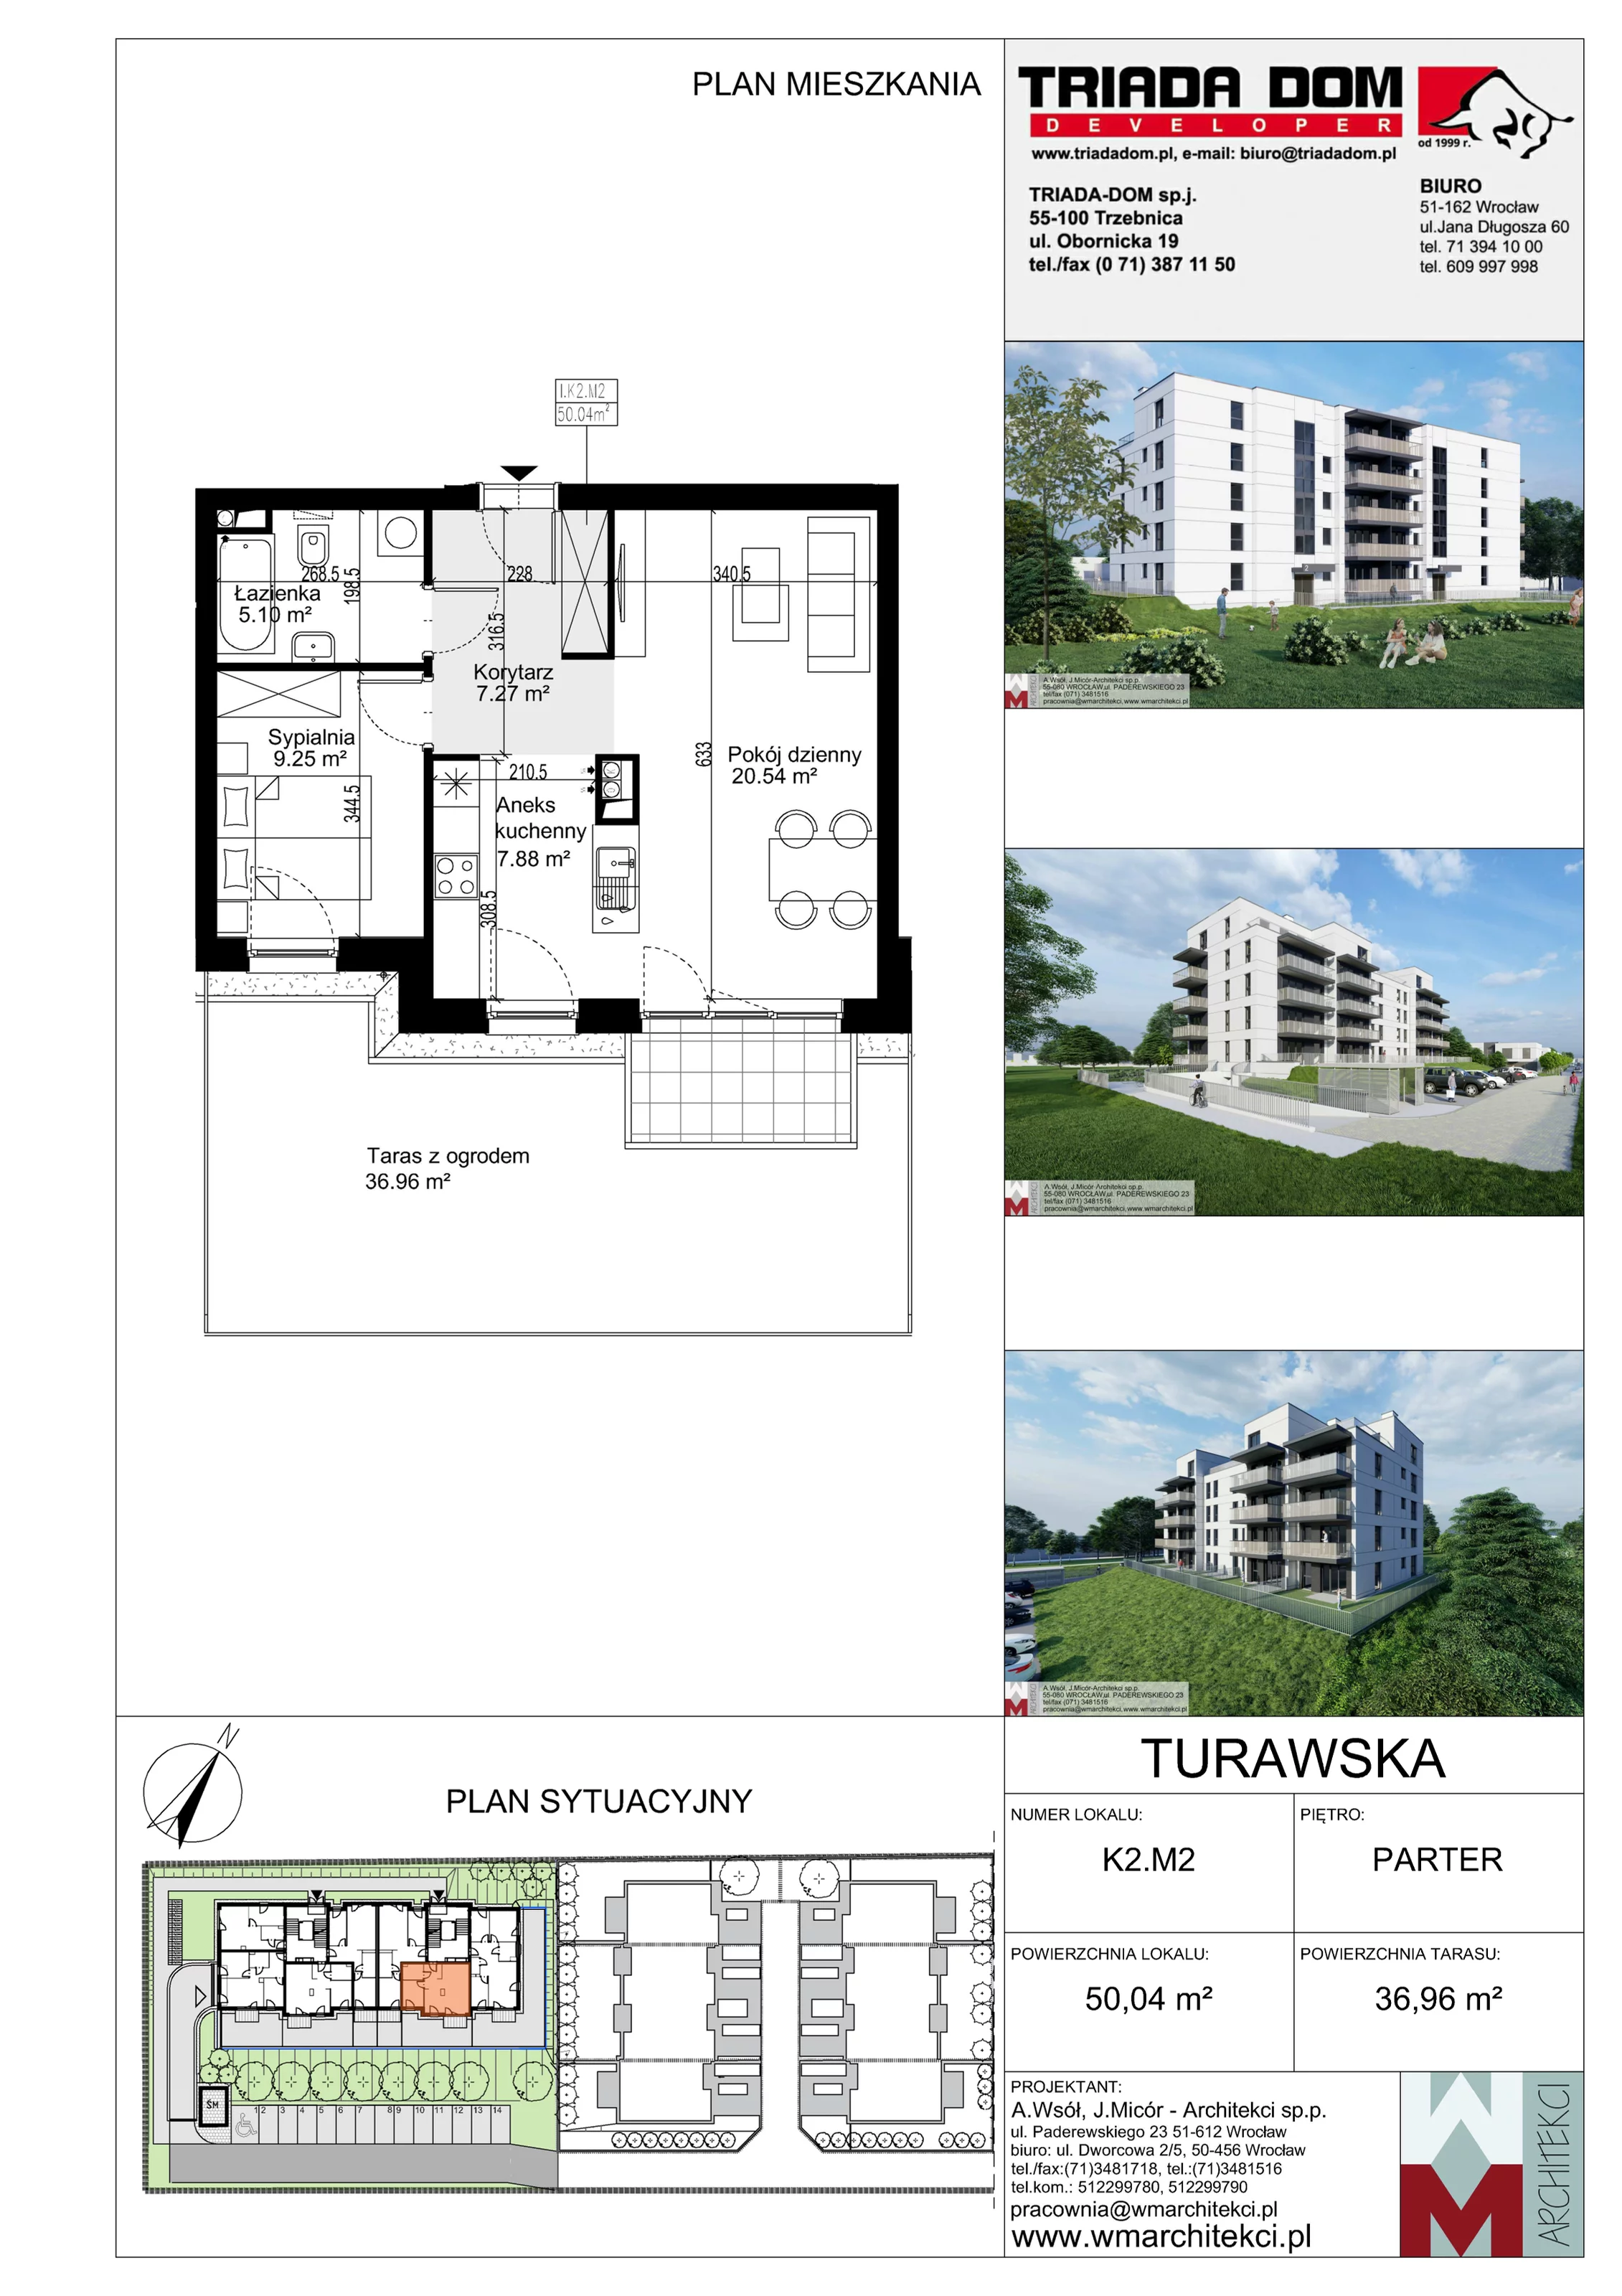 Mieszkanie 50,04 m², parter, oferta nr K2.M2, Ogrody Turawska, Wrocław, Księże, Krzyki, ul. Turawska 78